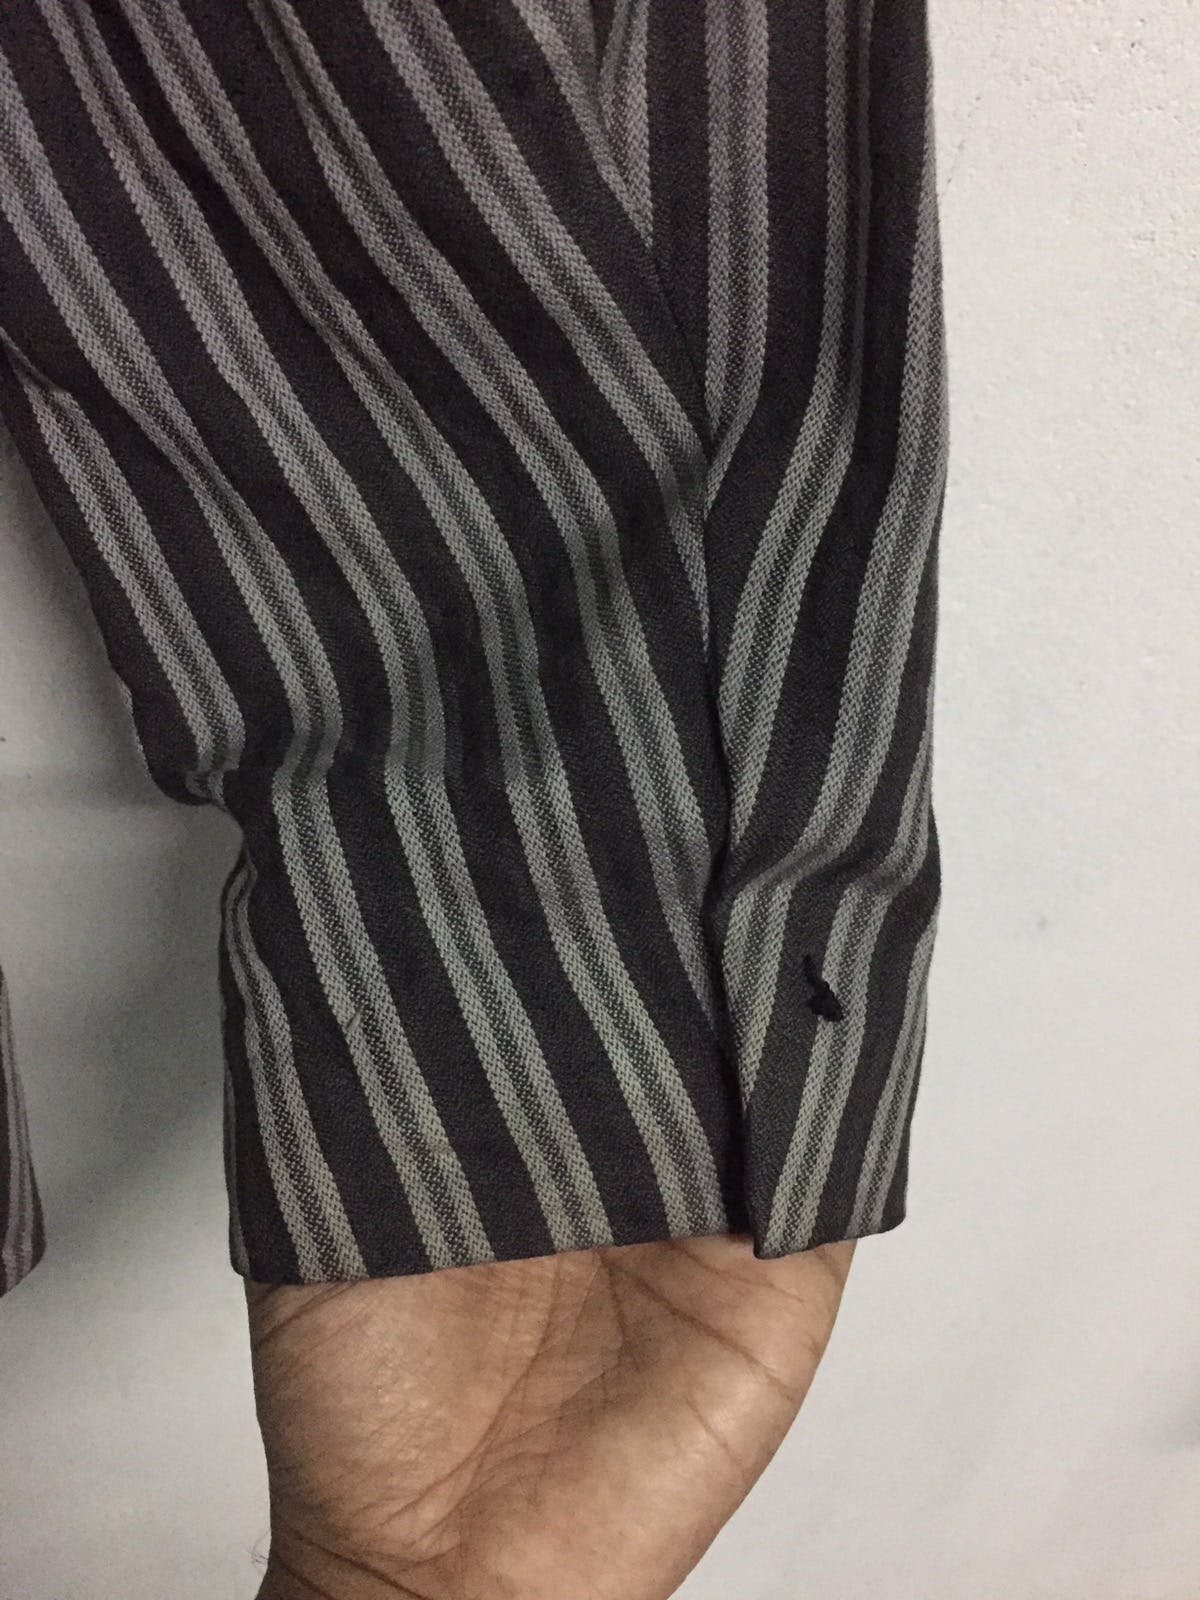 Kenzo Zebra Stripes Jacket Coat Made in Japan - 13